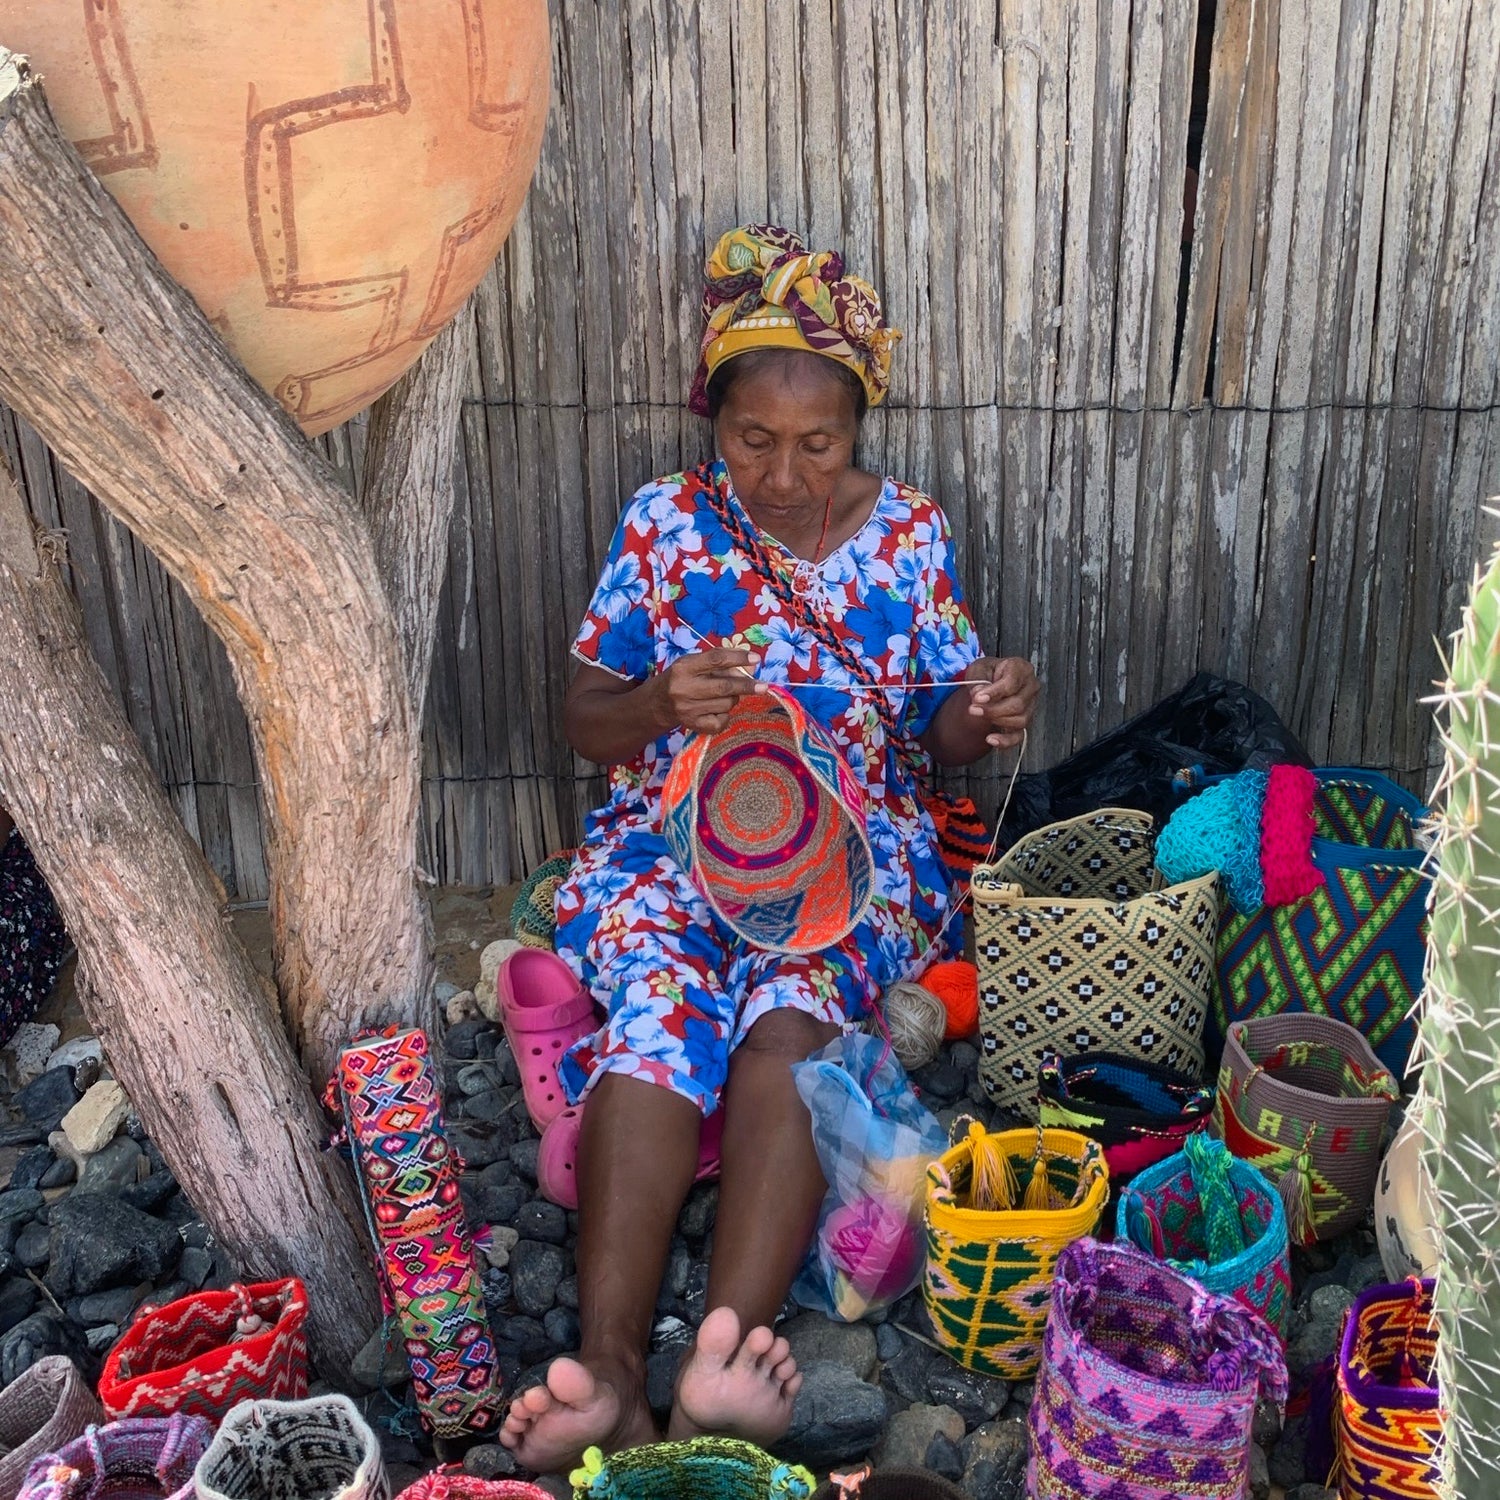 donna indigena wayuu lavorando al crochet mochila penisola della guajira